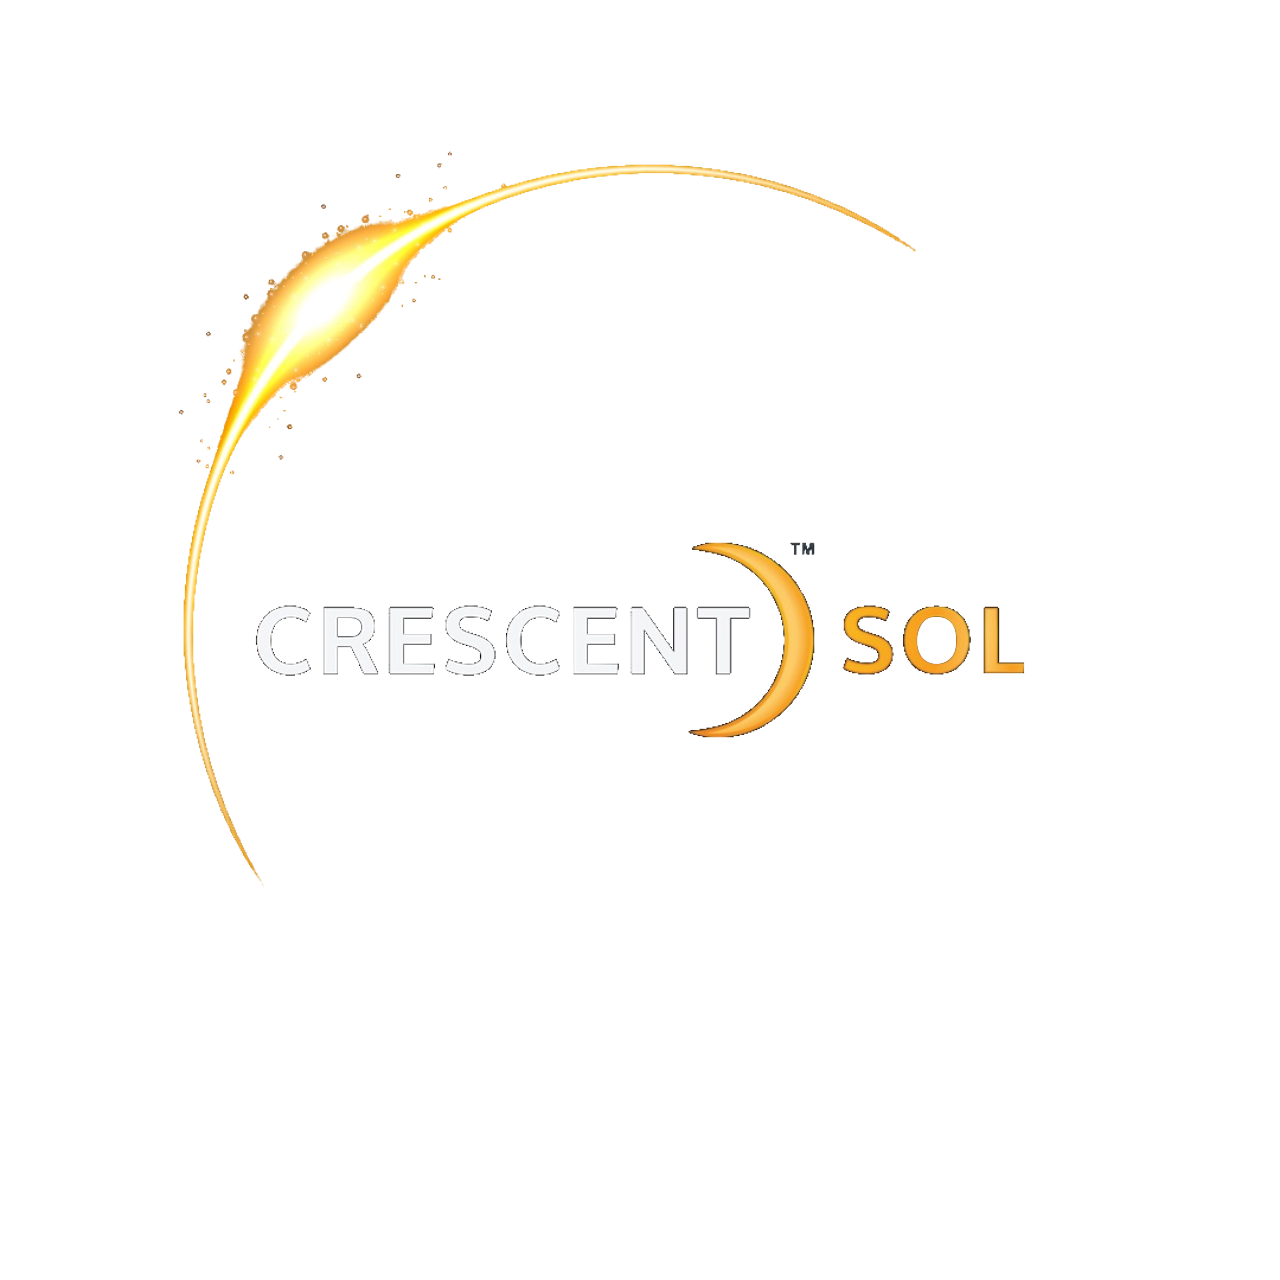 Crescent Sol